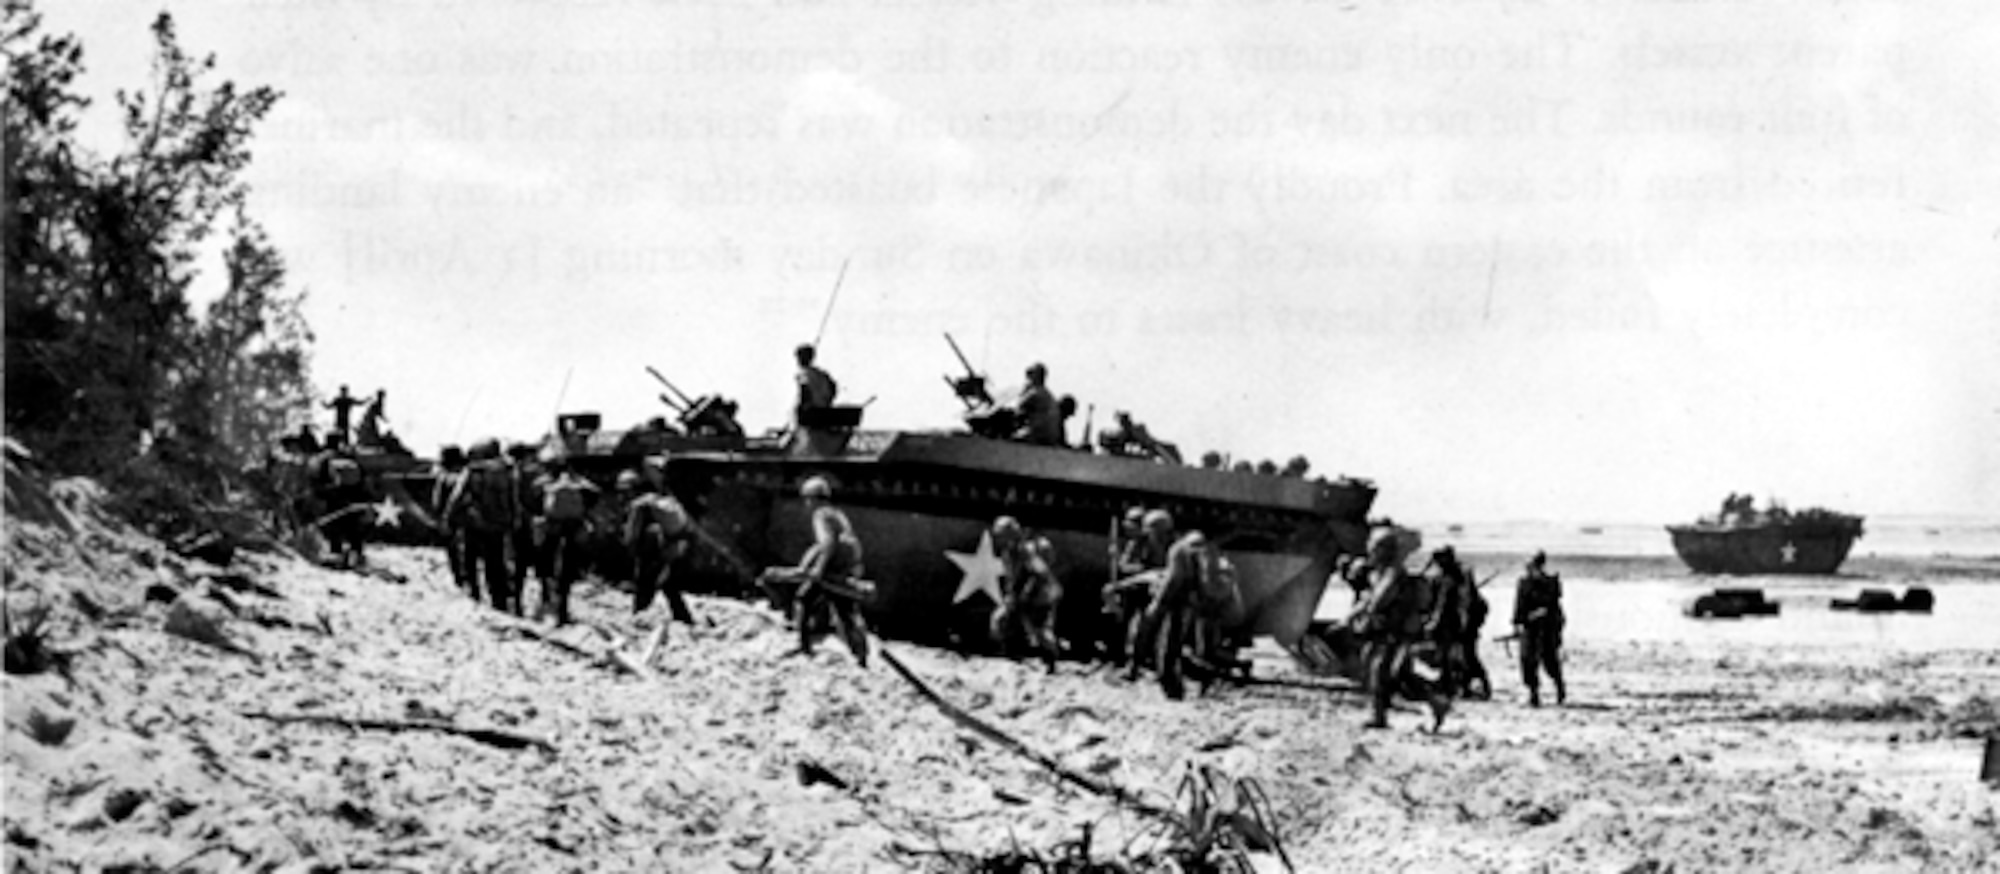 Okinawa landing